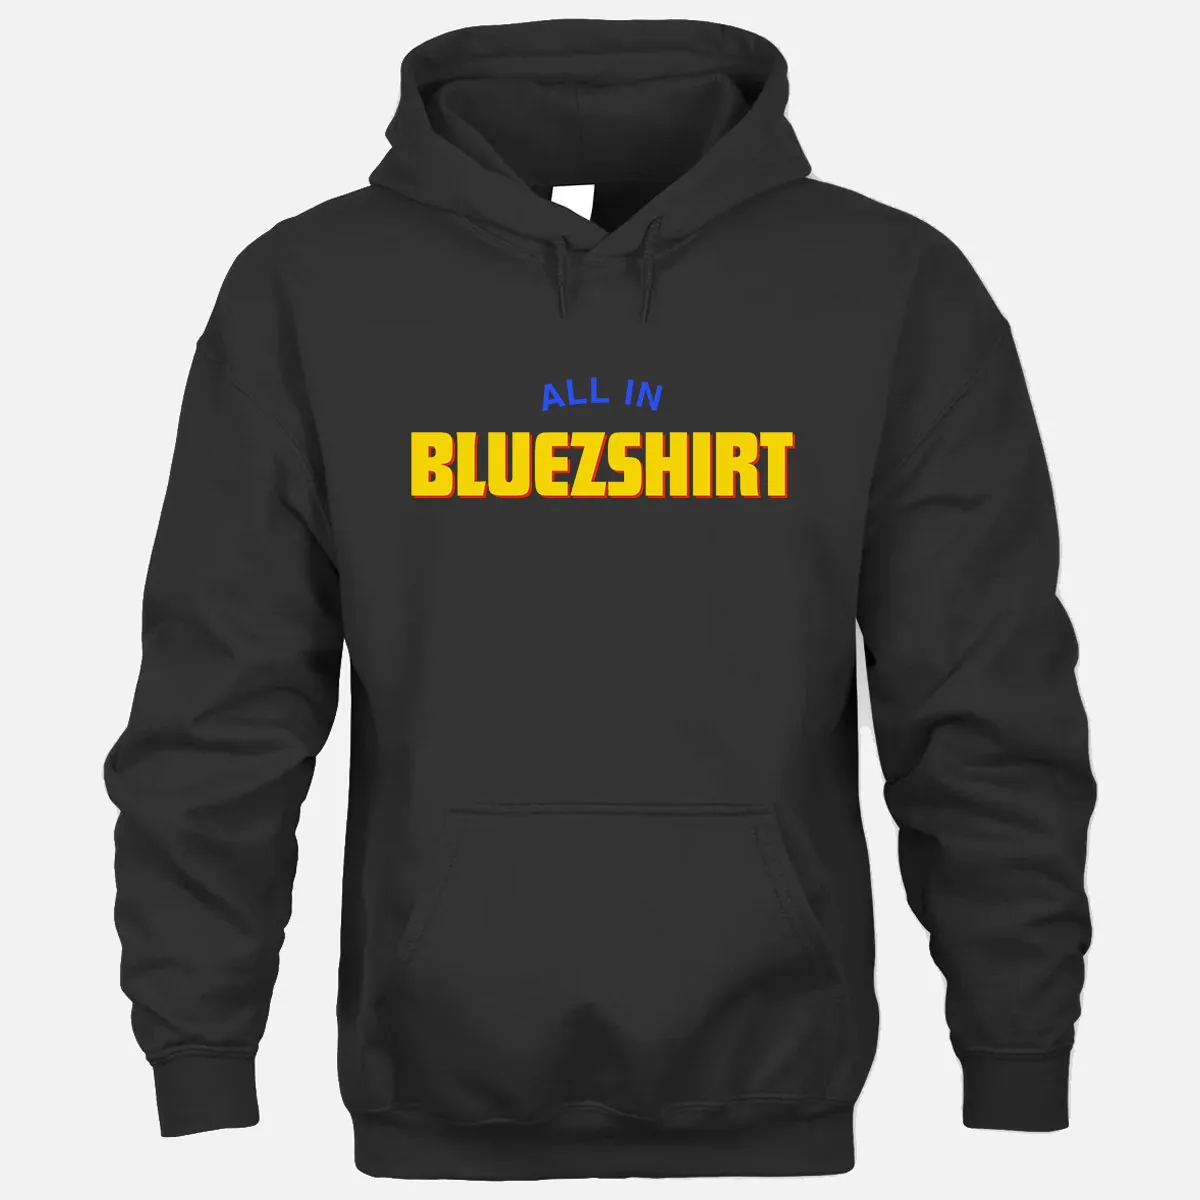 All In Bluezshirt Hoodie - Black